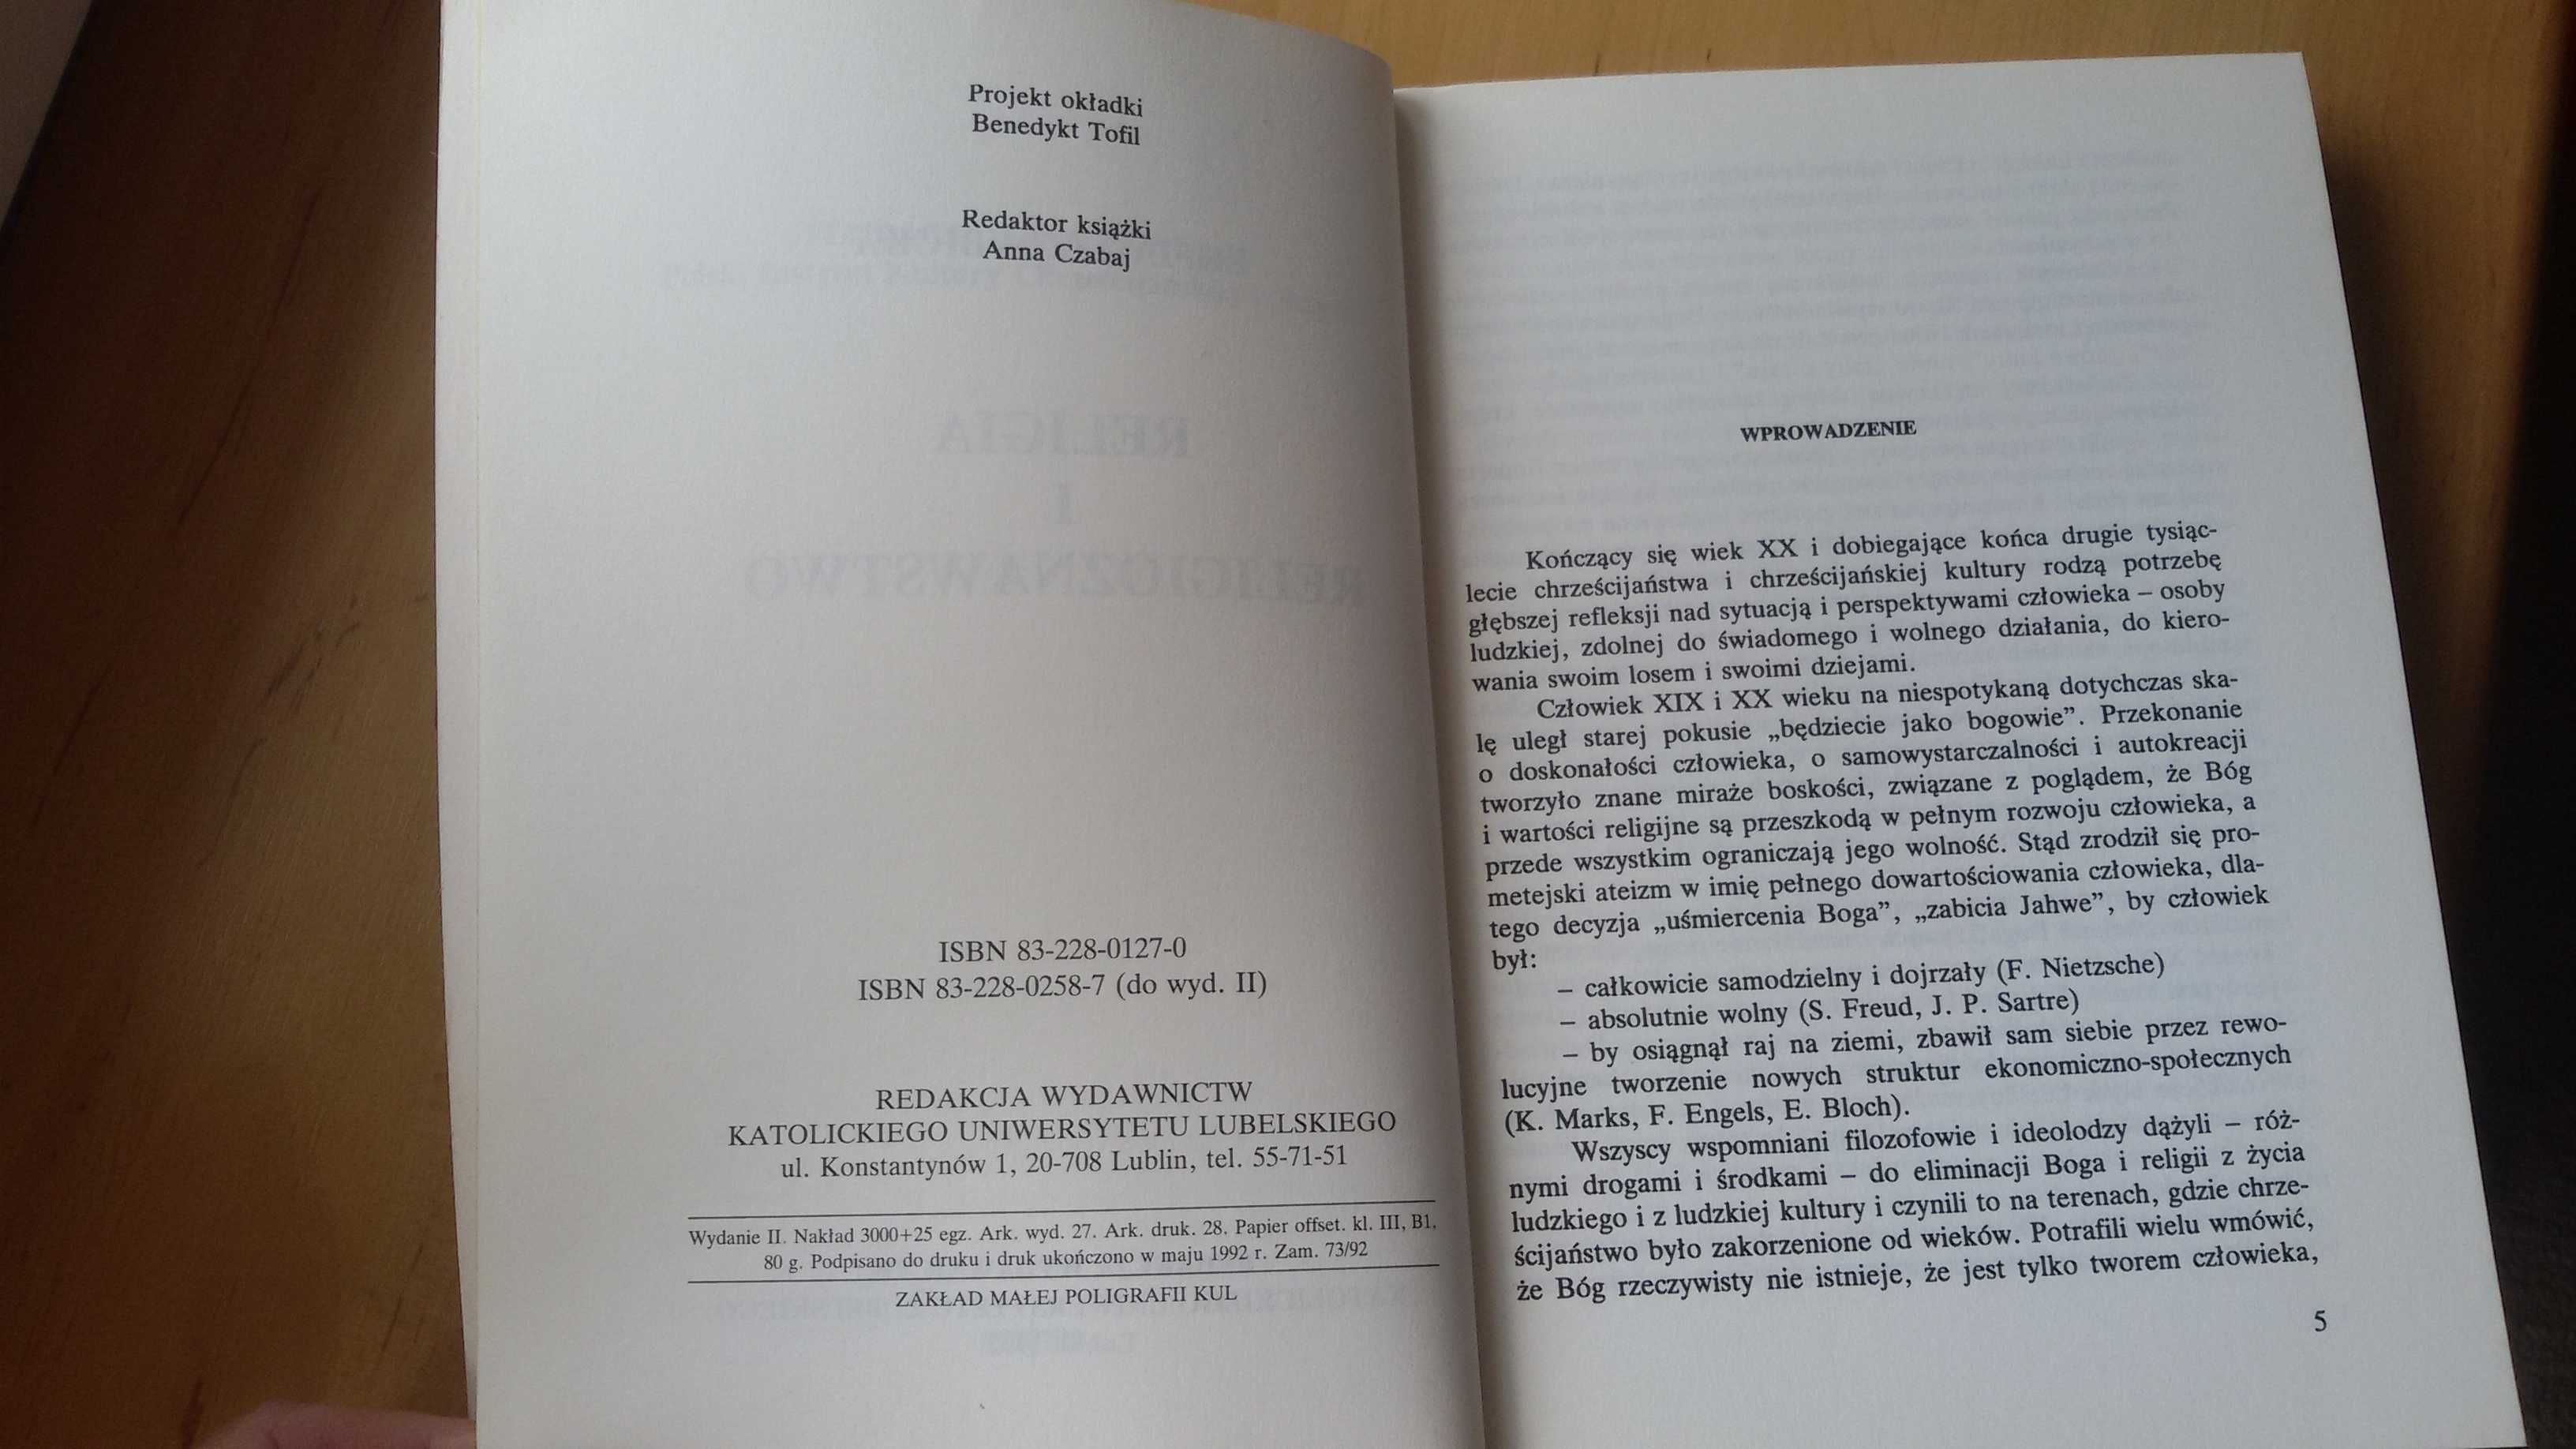 Religia i Religioznastwo, Zofia J. Zdybicka, wydanie KUL, 1992r.